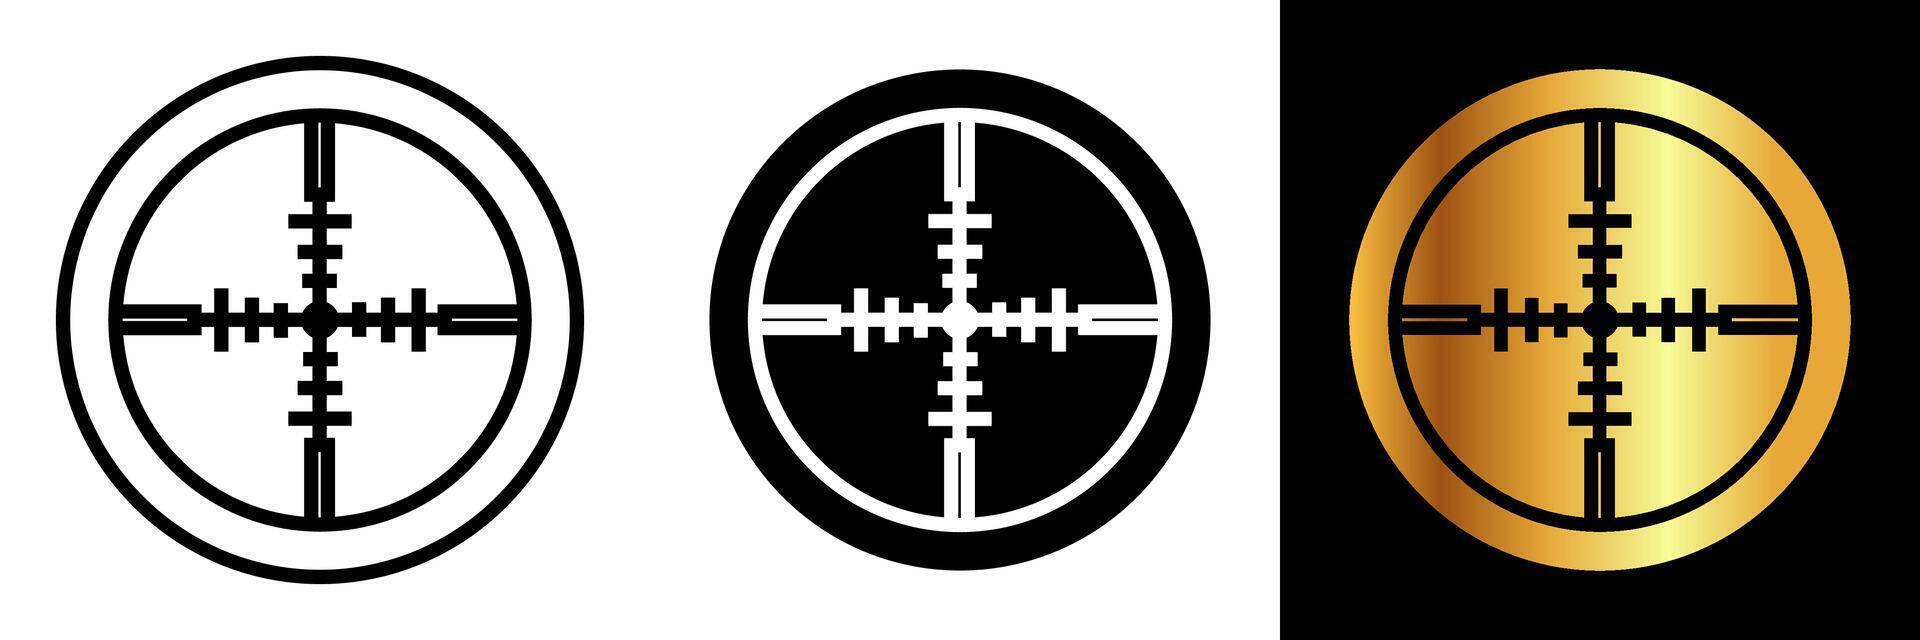 das Fadenkreuz Symbol symbolisiert Präzision, Zielen, und Genauigkeit. es ist häufig benutzt im verschiedene Kontexte eine solche wie Ausrichtung, Schießen, Spiele, und Design zu vertreten Fokus und punktgenau Genauigkeit. vektor